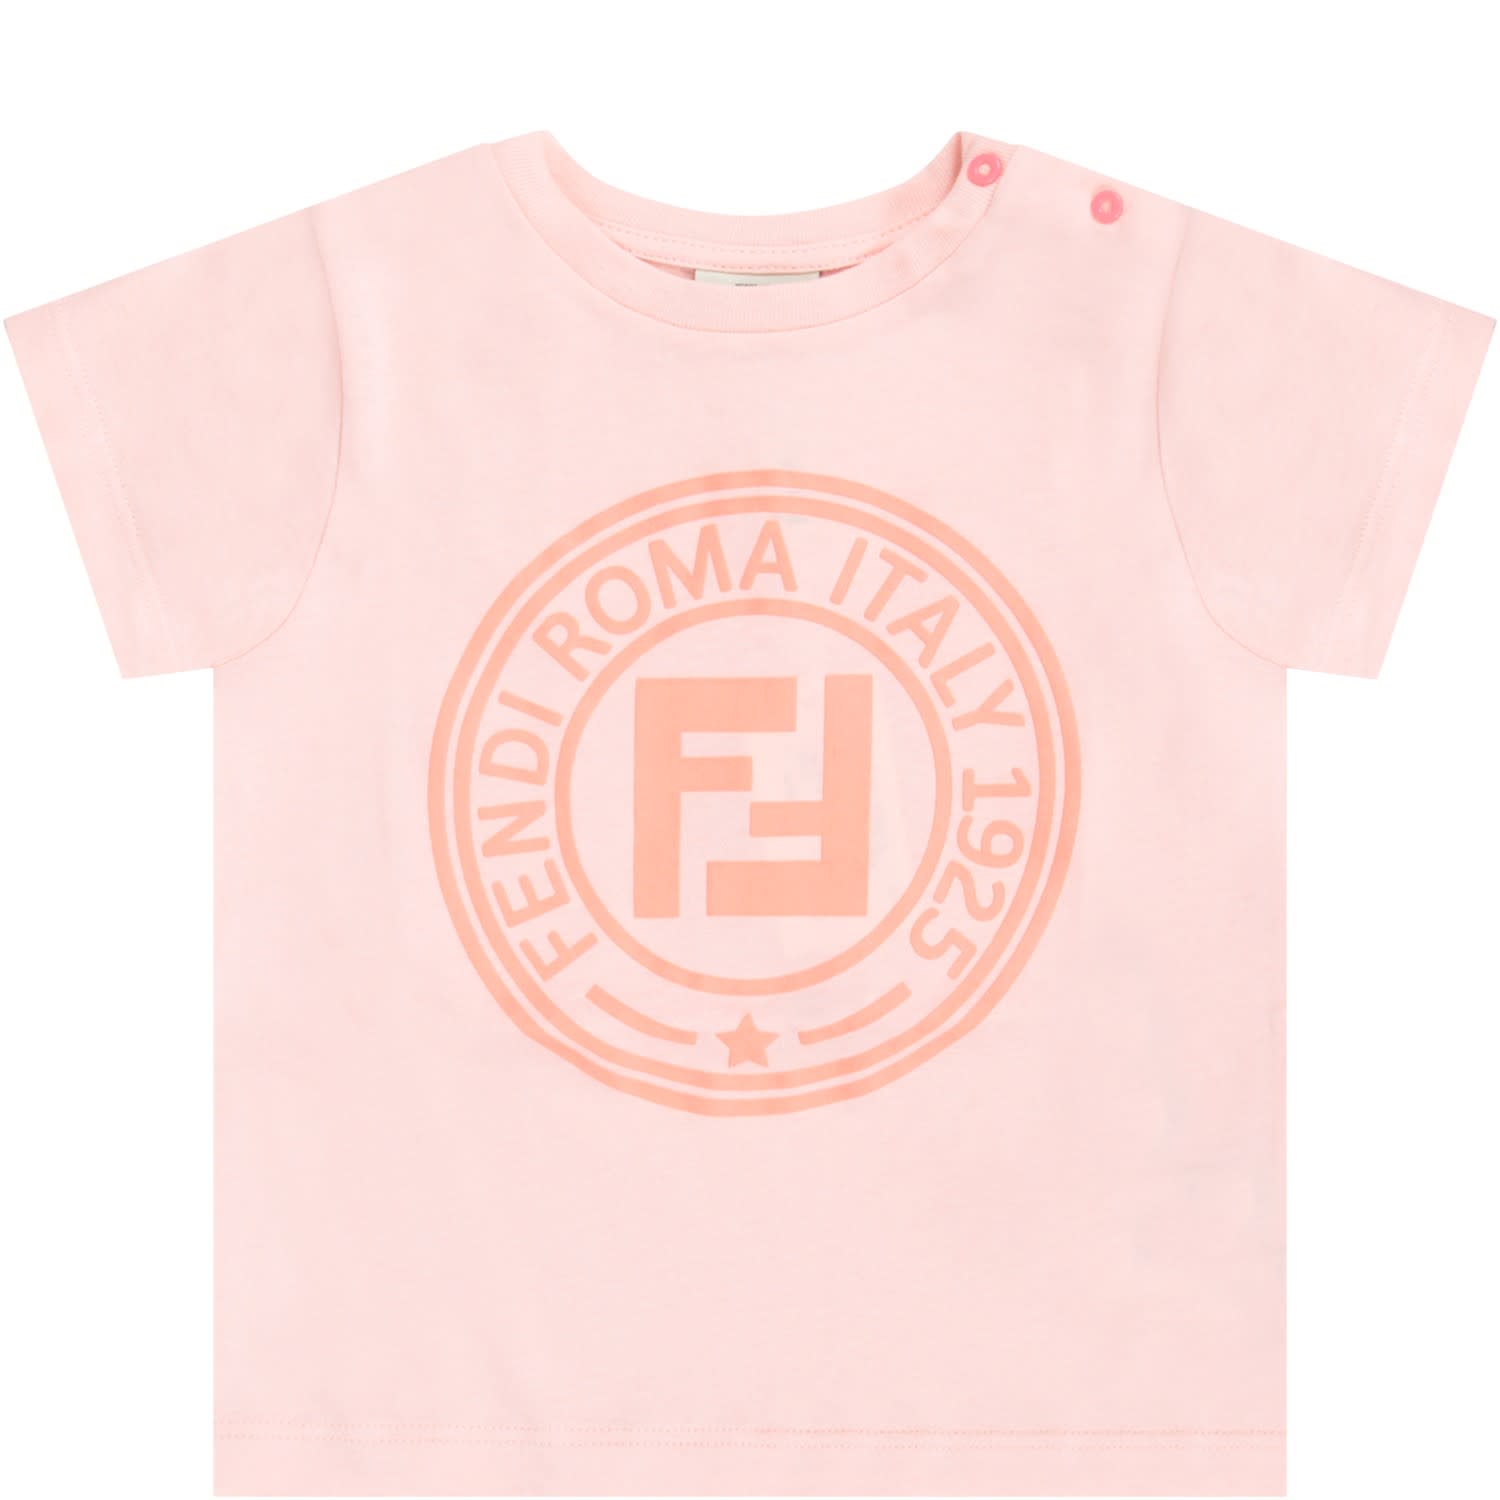 Fendi Pink Shirt Top Sellers, 53% OFF | edetaria.com